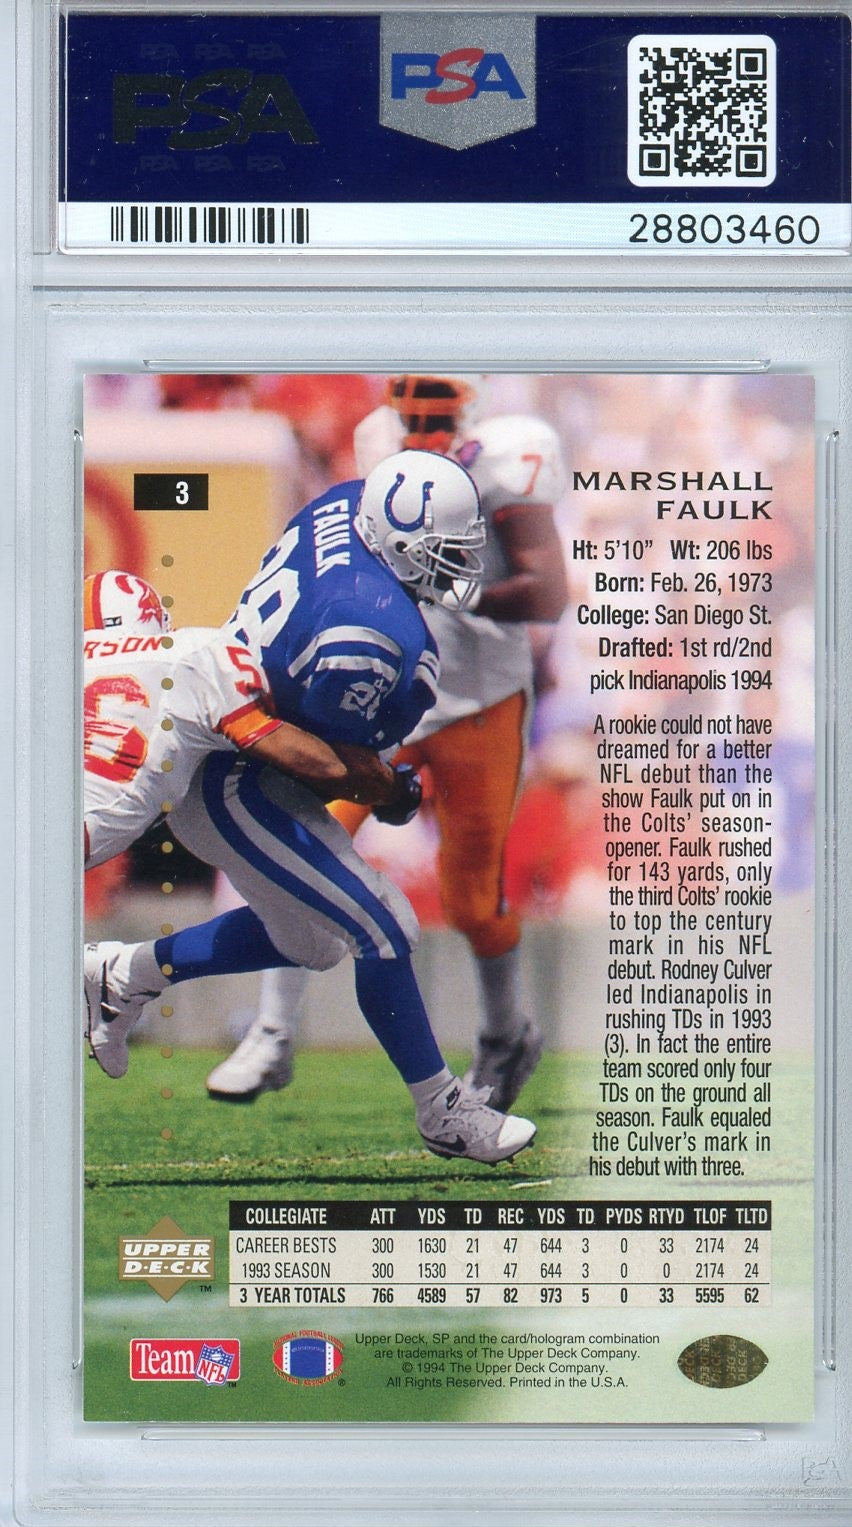 1994 SP Marshall Faulk Foil Rookie Card PSA 9